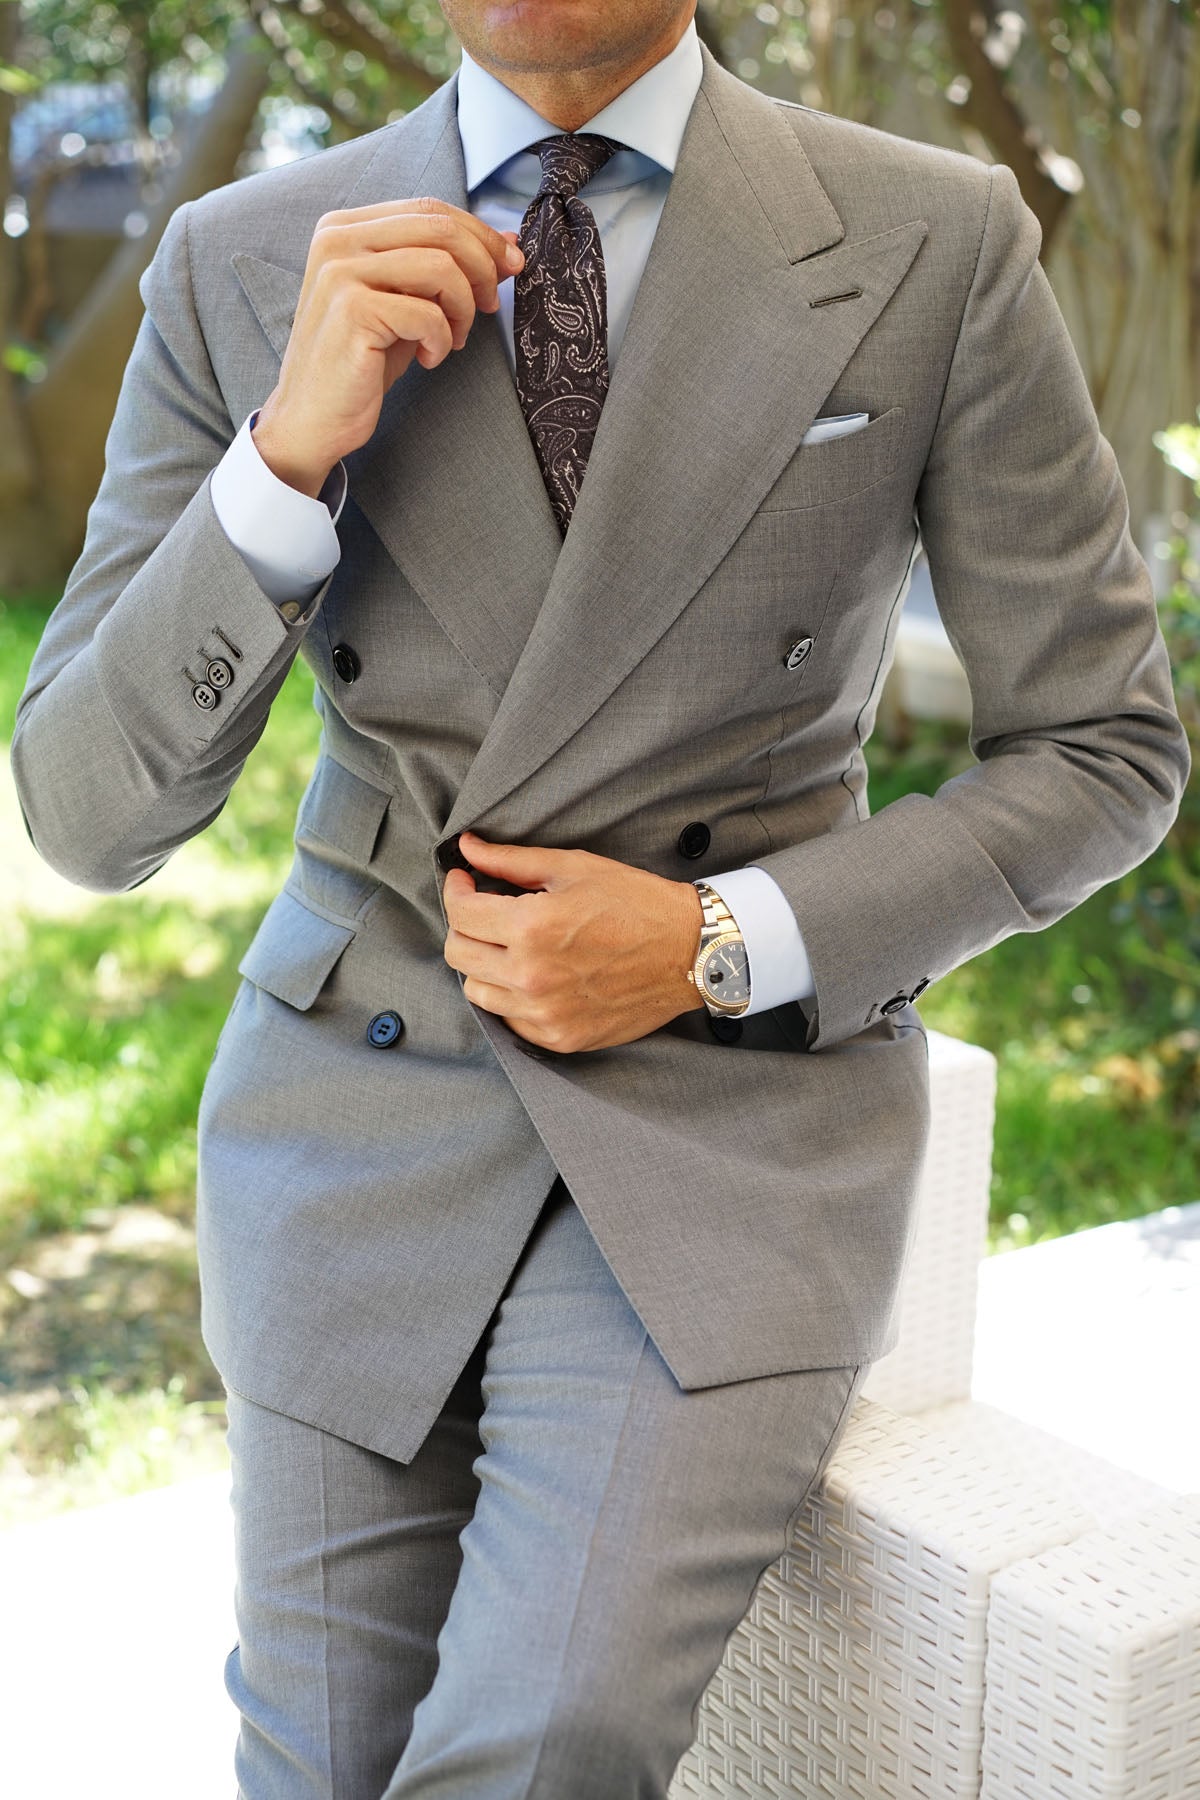 Culaccino Kettle Black Paisley Skinny Tie | Men's Vintage Slim Ties AU ...